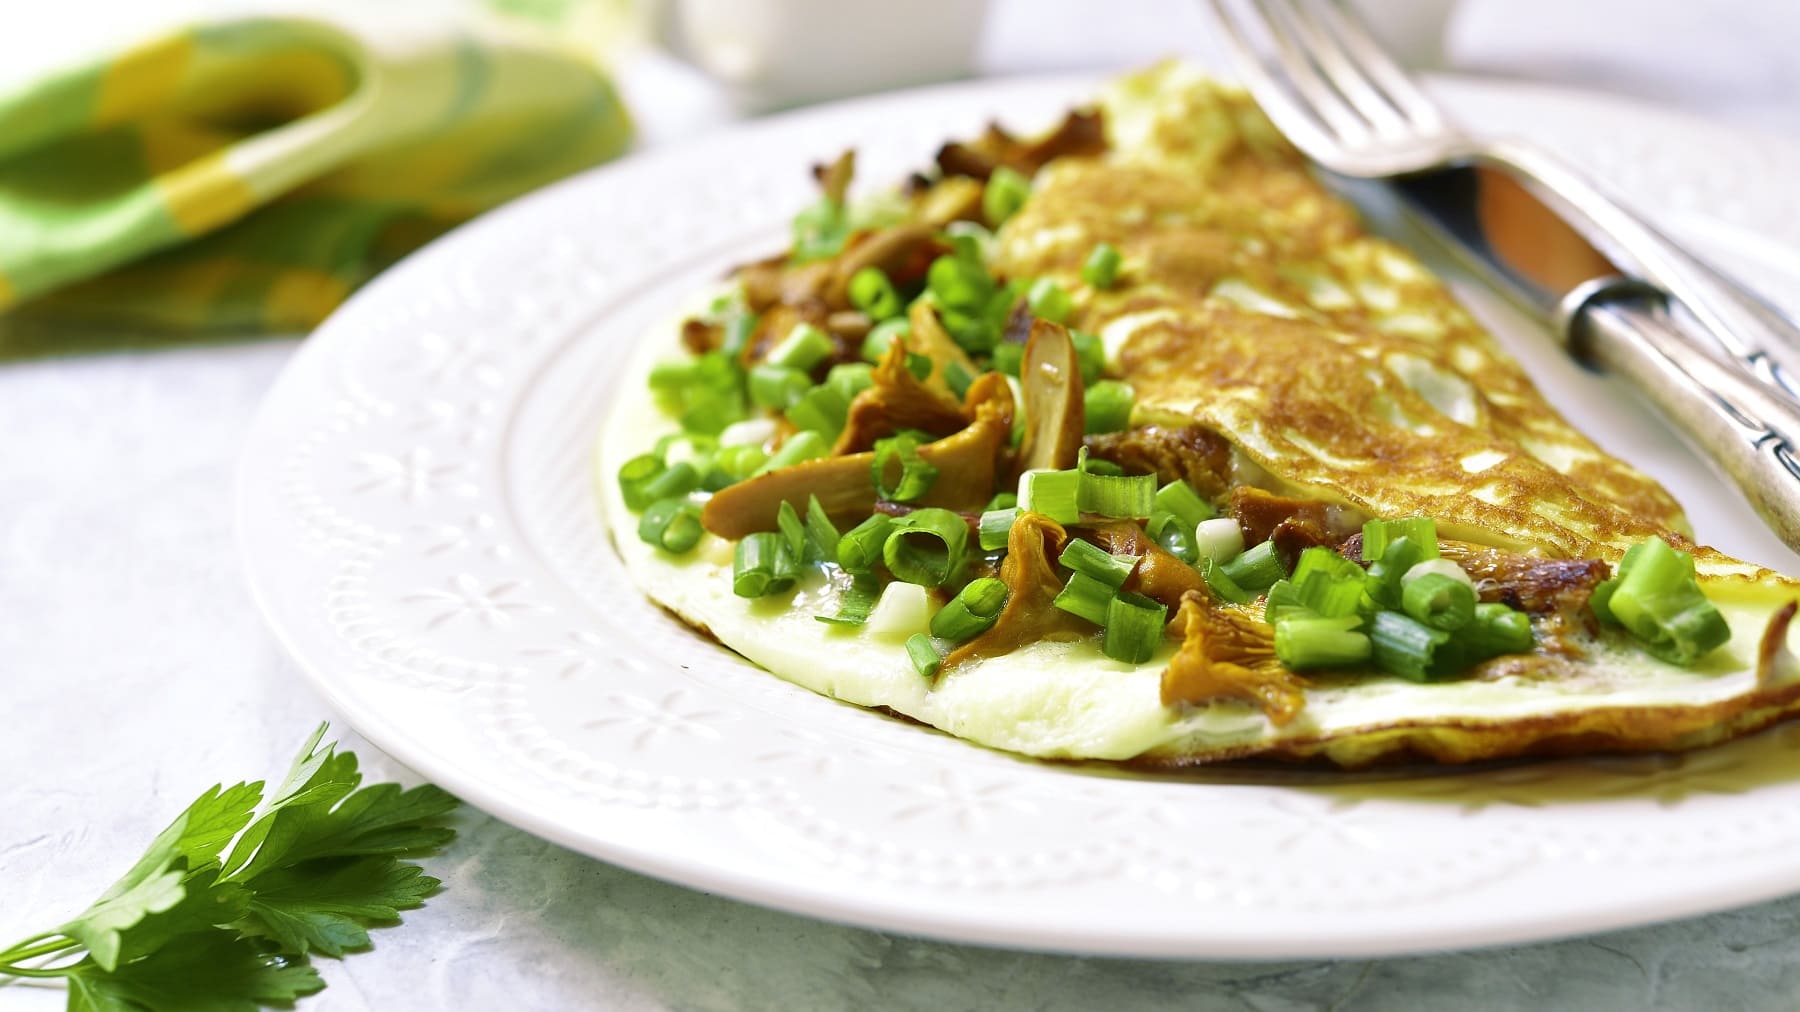 Ein weißer Teller mit dem Kräuter-Omelett und Pfifferlingen auf einem hellen Untergrund mit einem grünen Küchentuch.